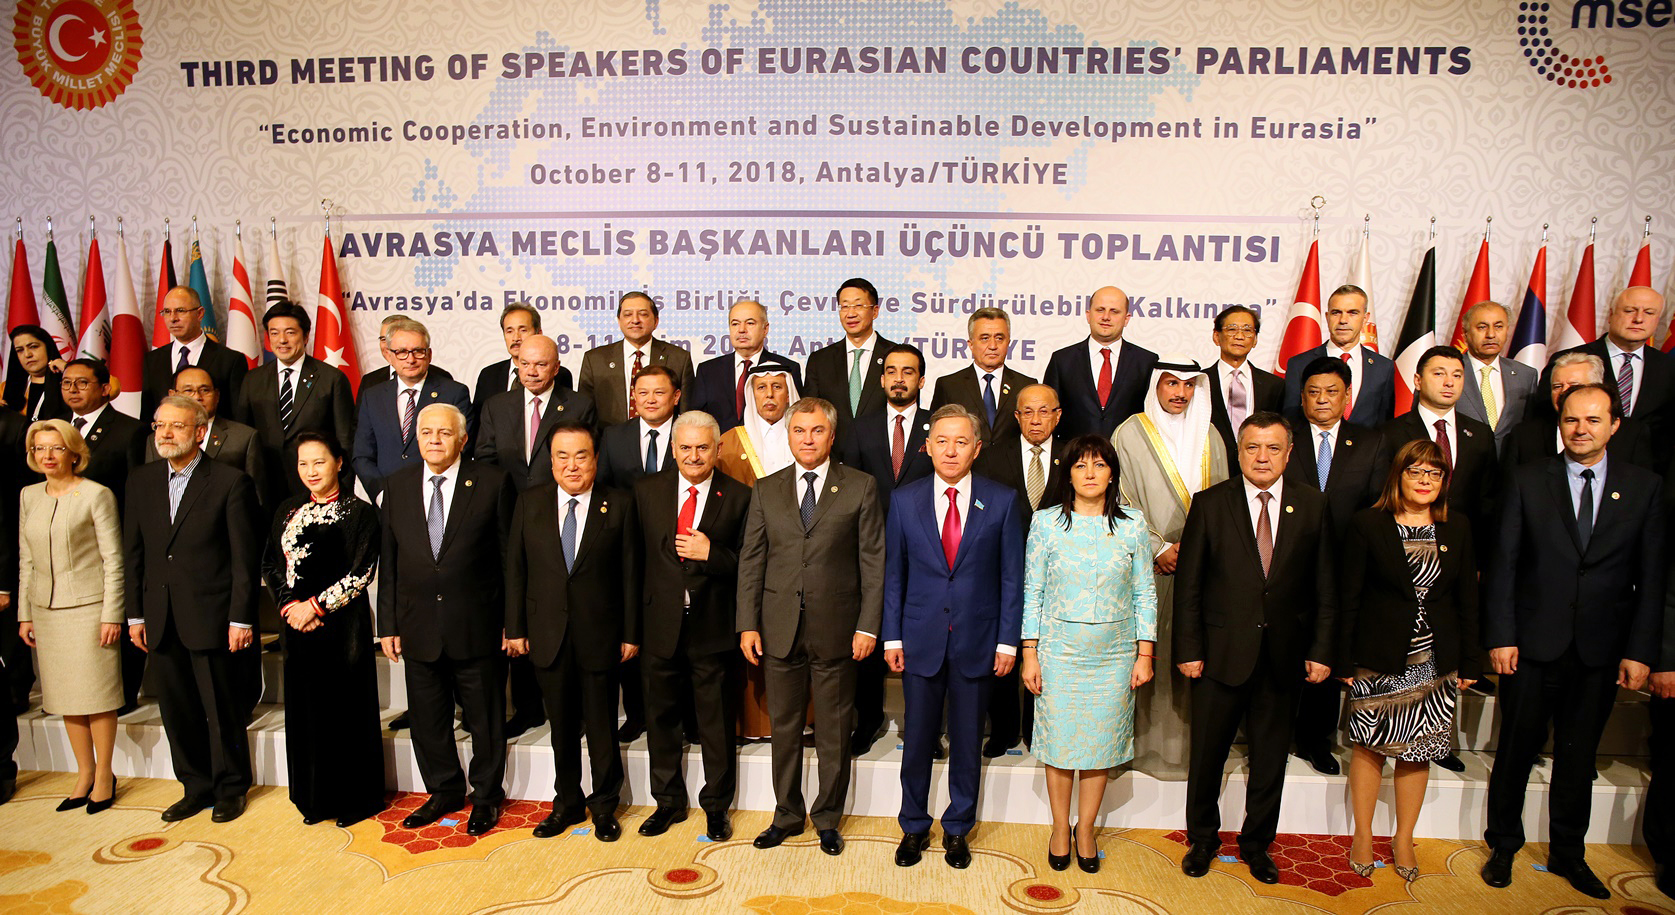 الاجتماع الثالث لرؤساء برلمانات الدول الأوروبية والآسيوية (أوراسيا)